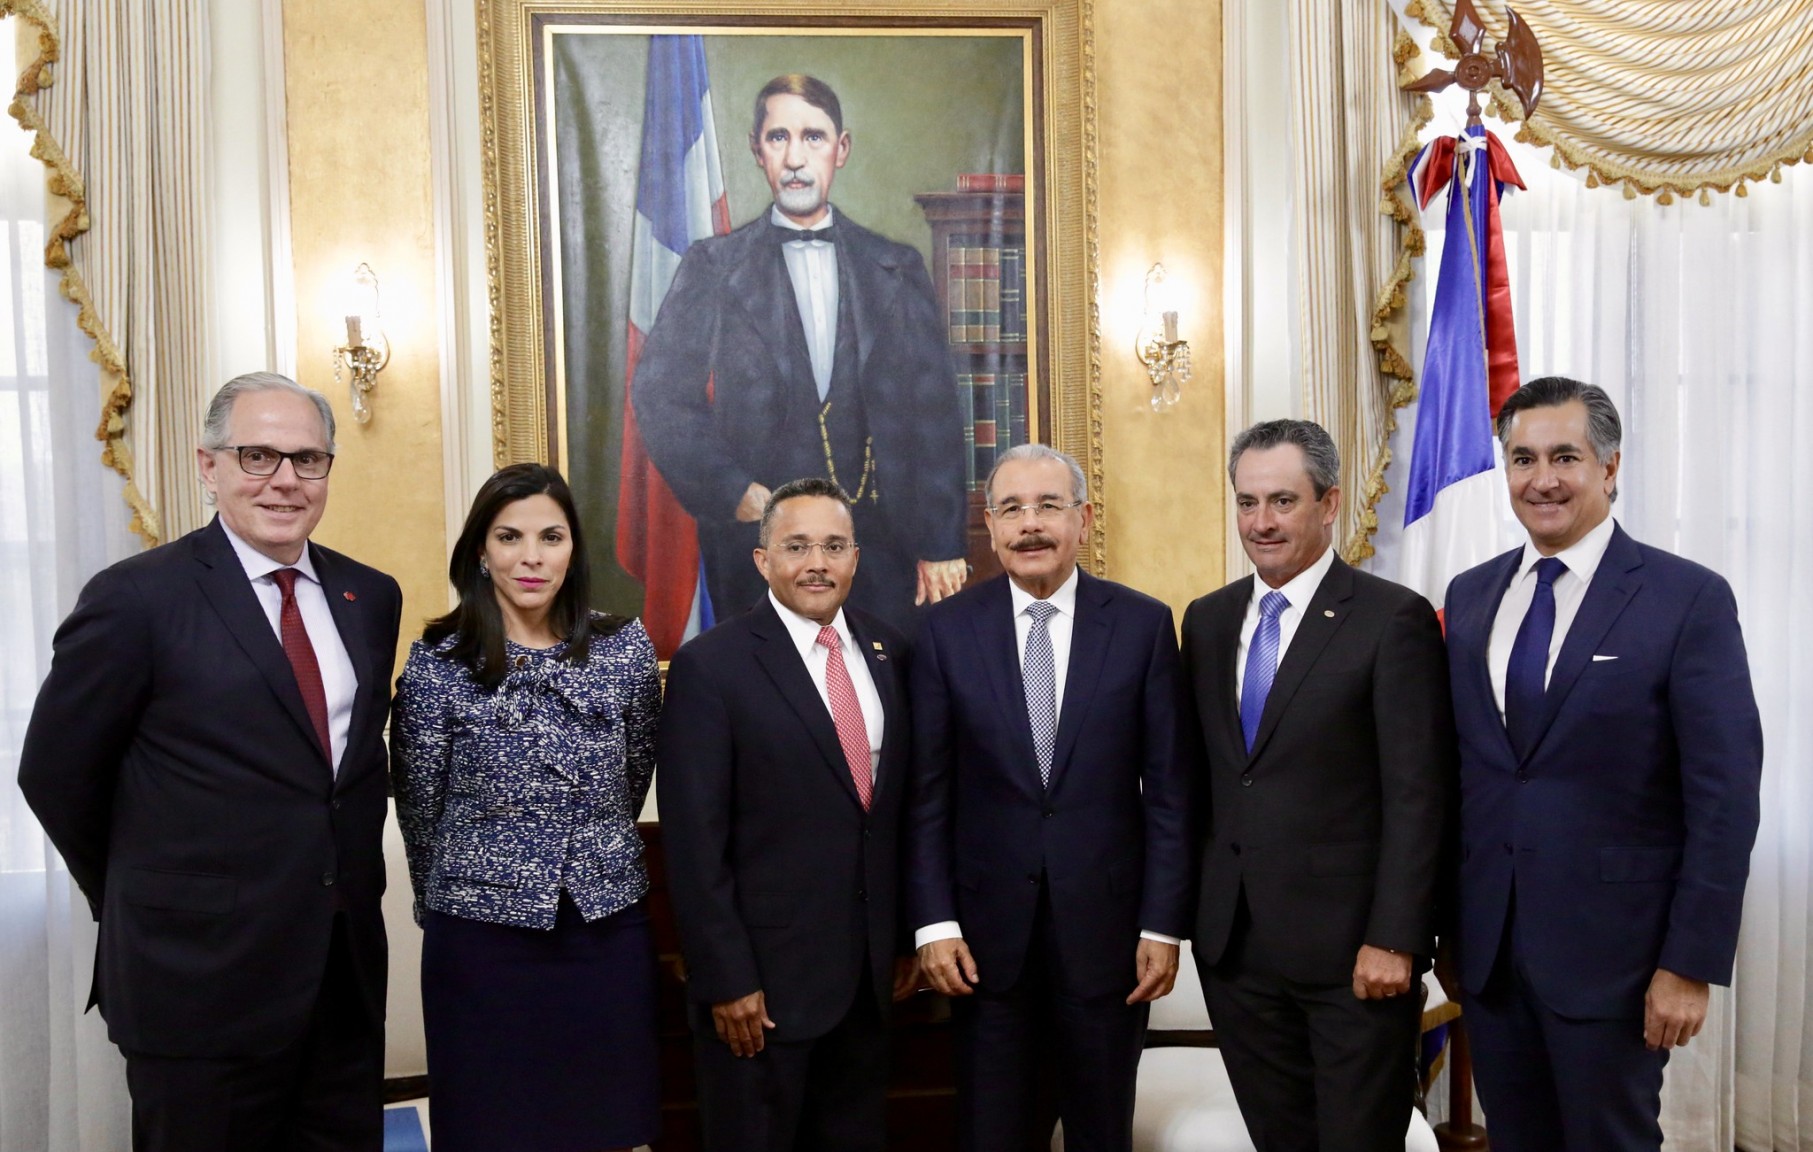 REPÚBLICA DOMINICANA: Alianza público-privada sigue fortaleciéndose: recién electo Consejo Directores de AMCHAMDR visita al presidente Danilo Medina